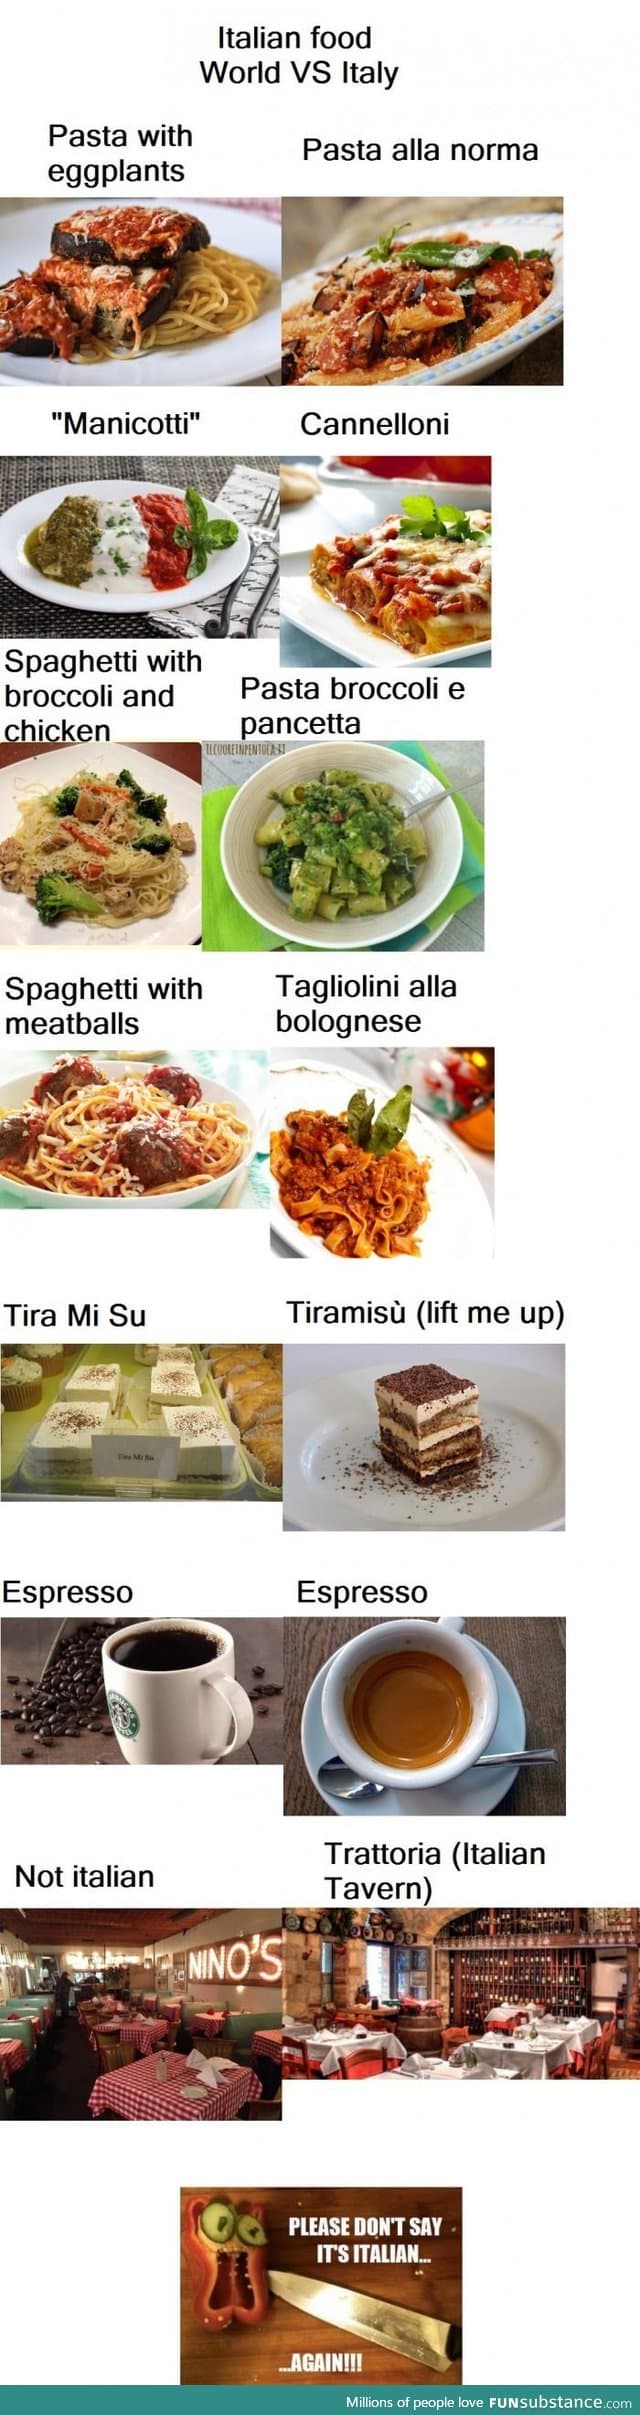 Italian food: World vs Italy